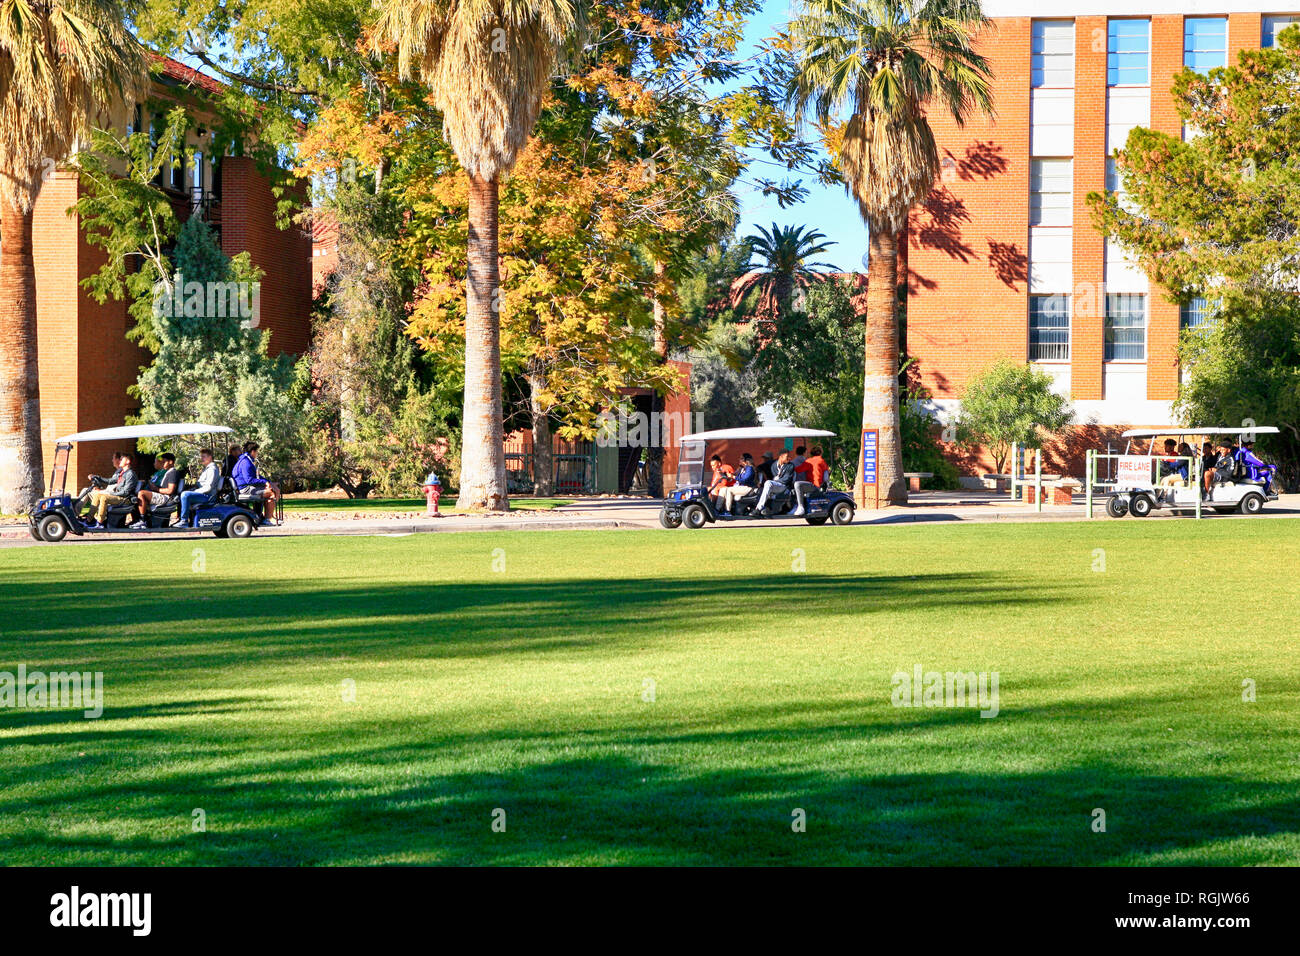 Gast College Football Team Mitglieder erhalten eine geführte Tour auf Golfkarren auf dem Campus der Universität von Arizona in Tucson AZ Stockfoto